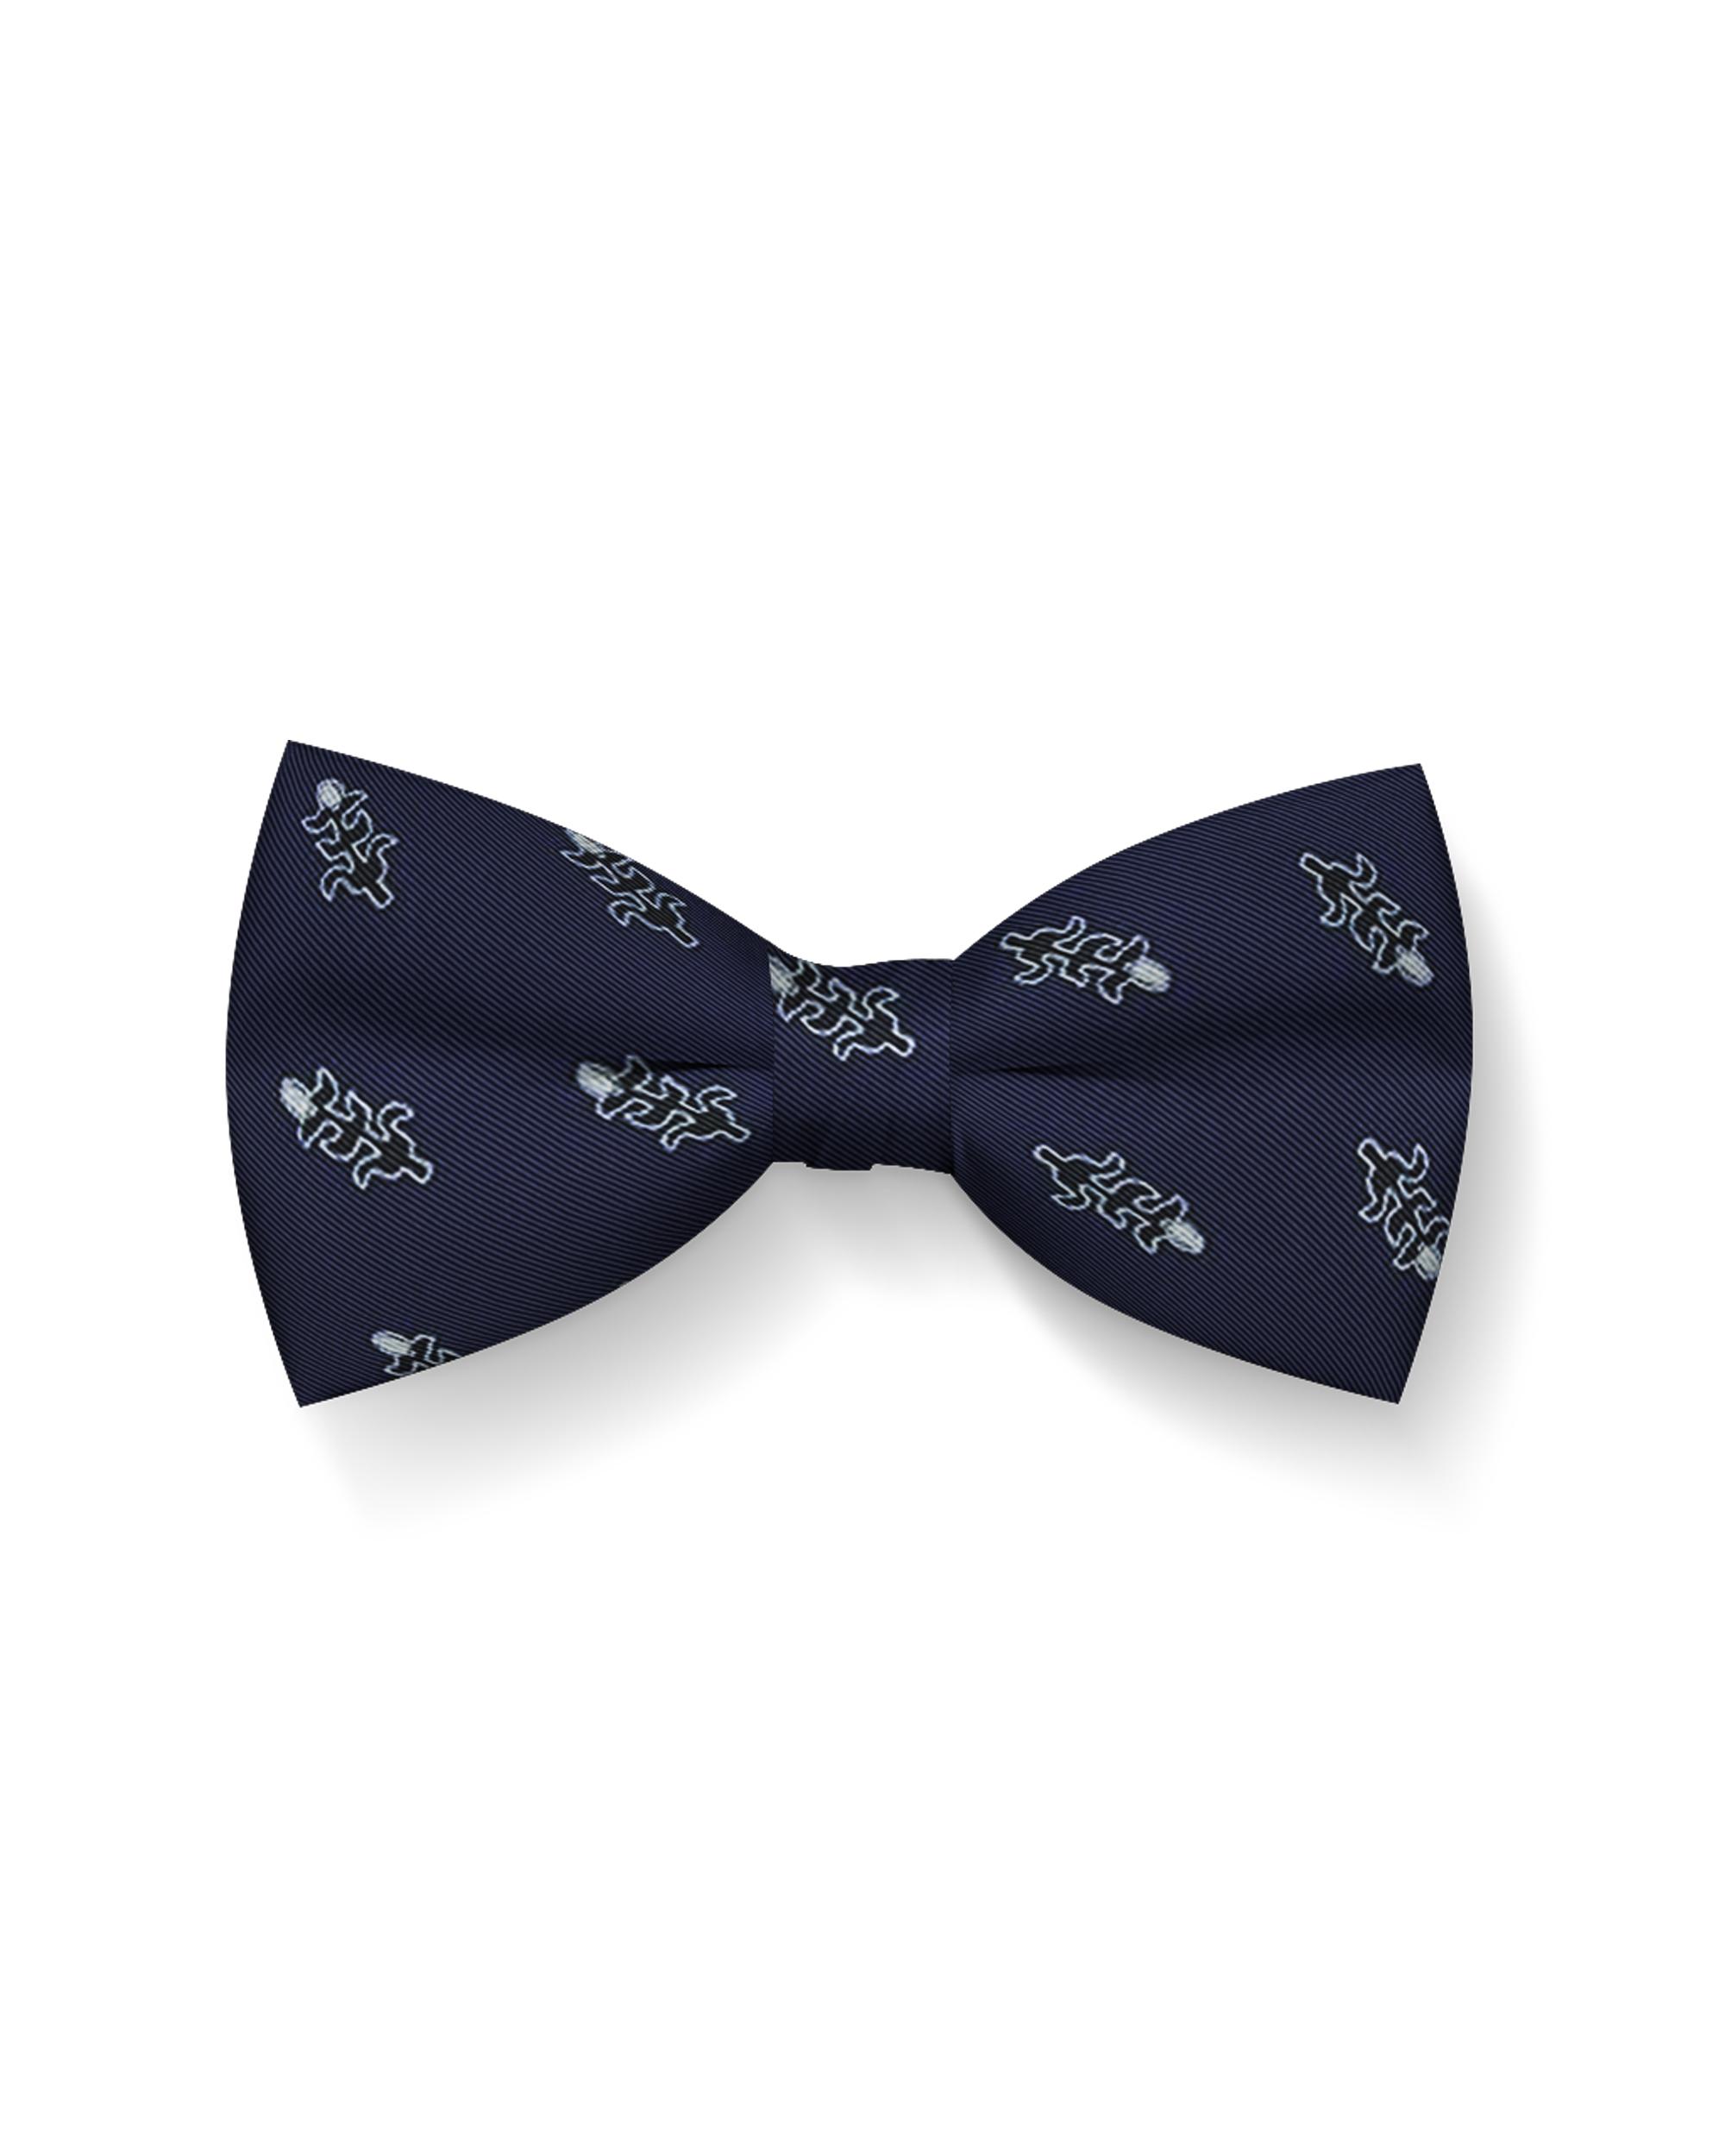 Tolige Silk Bow Tie (Navy Blue)